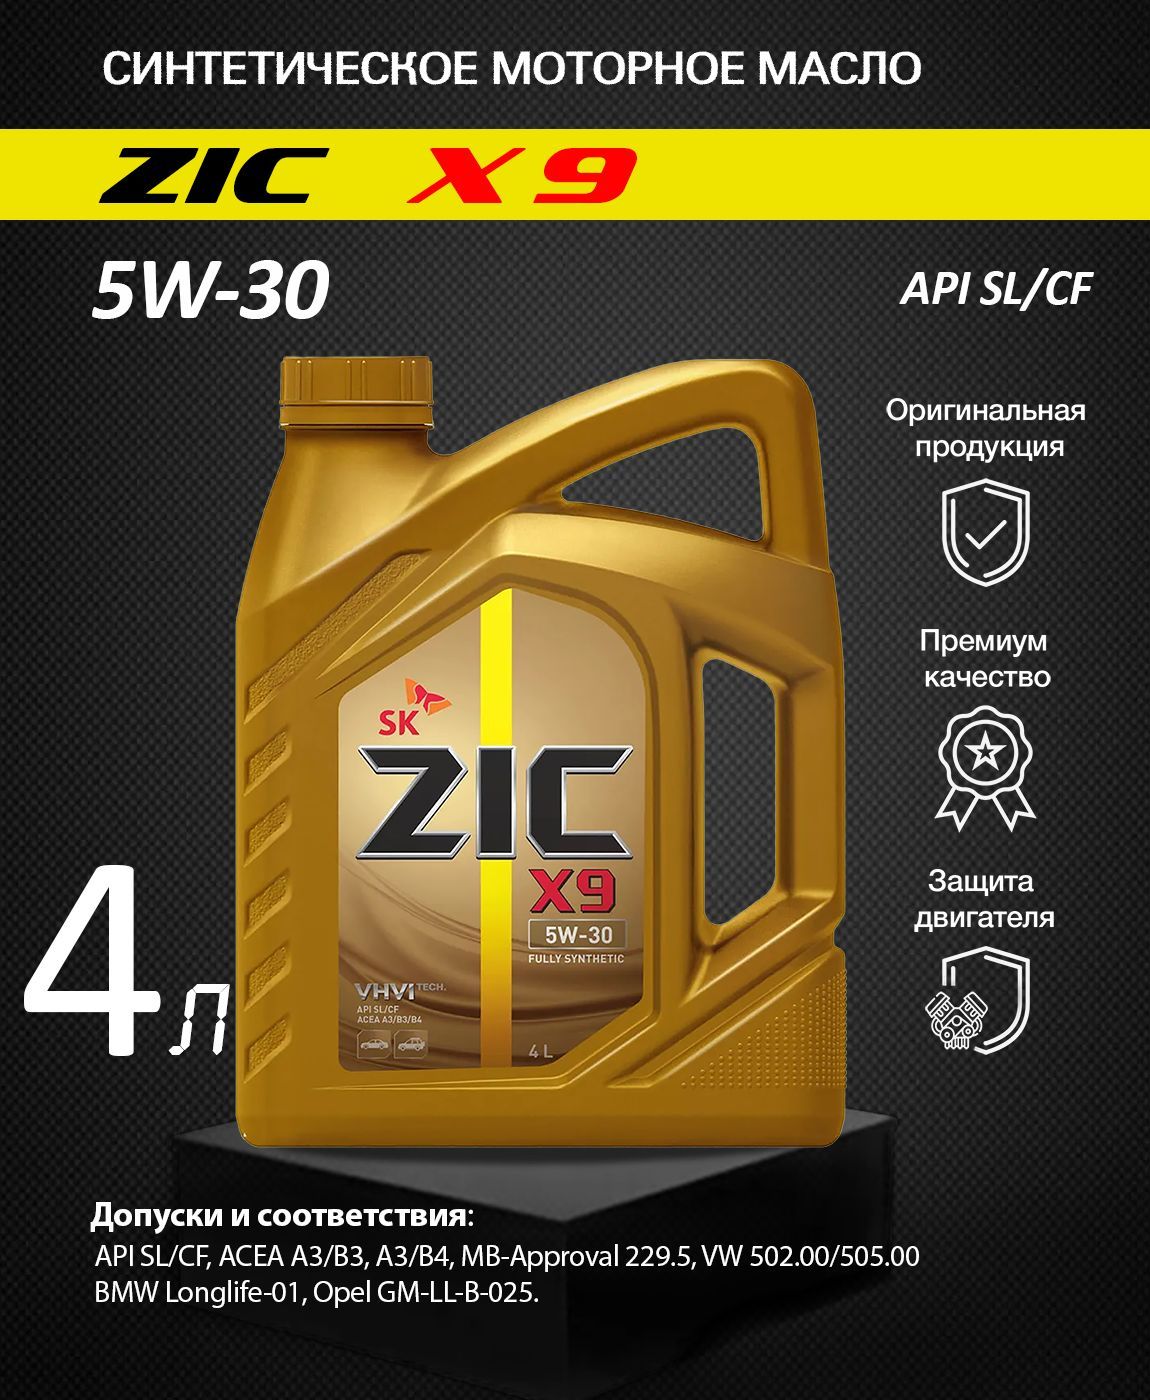 162614 ZIC. ZIC x9 5w-30 4л. Новый пакет присадок ZIC. Масло моторное zic x9 отзывы